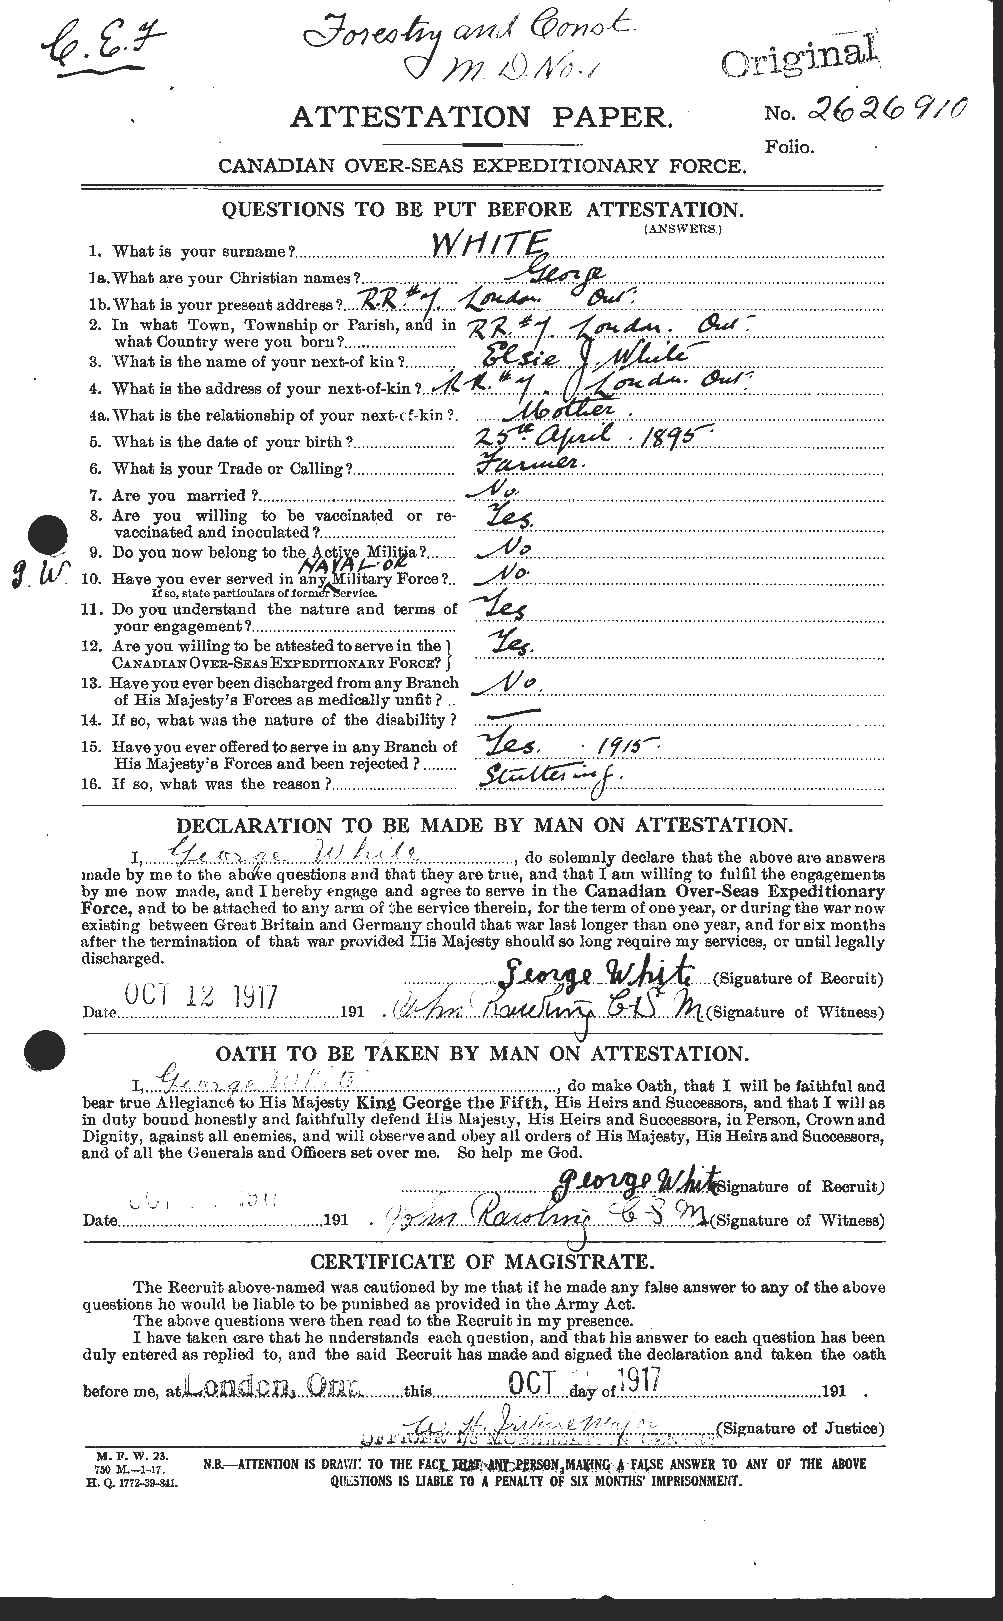 Dossiers du Personnel de la Première Guerre mondiale - CEC 669447a